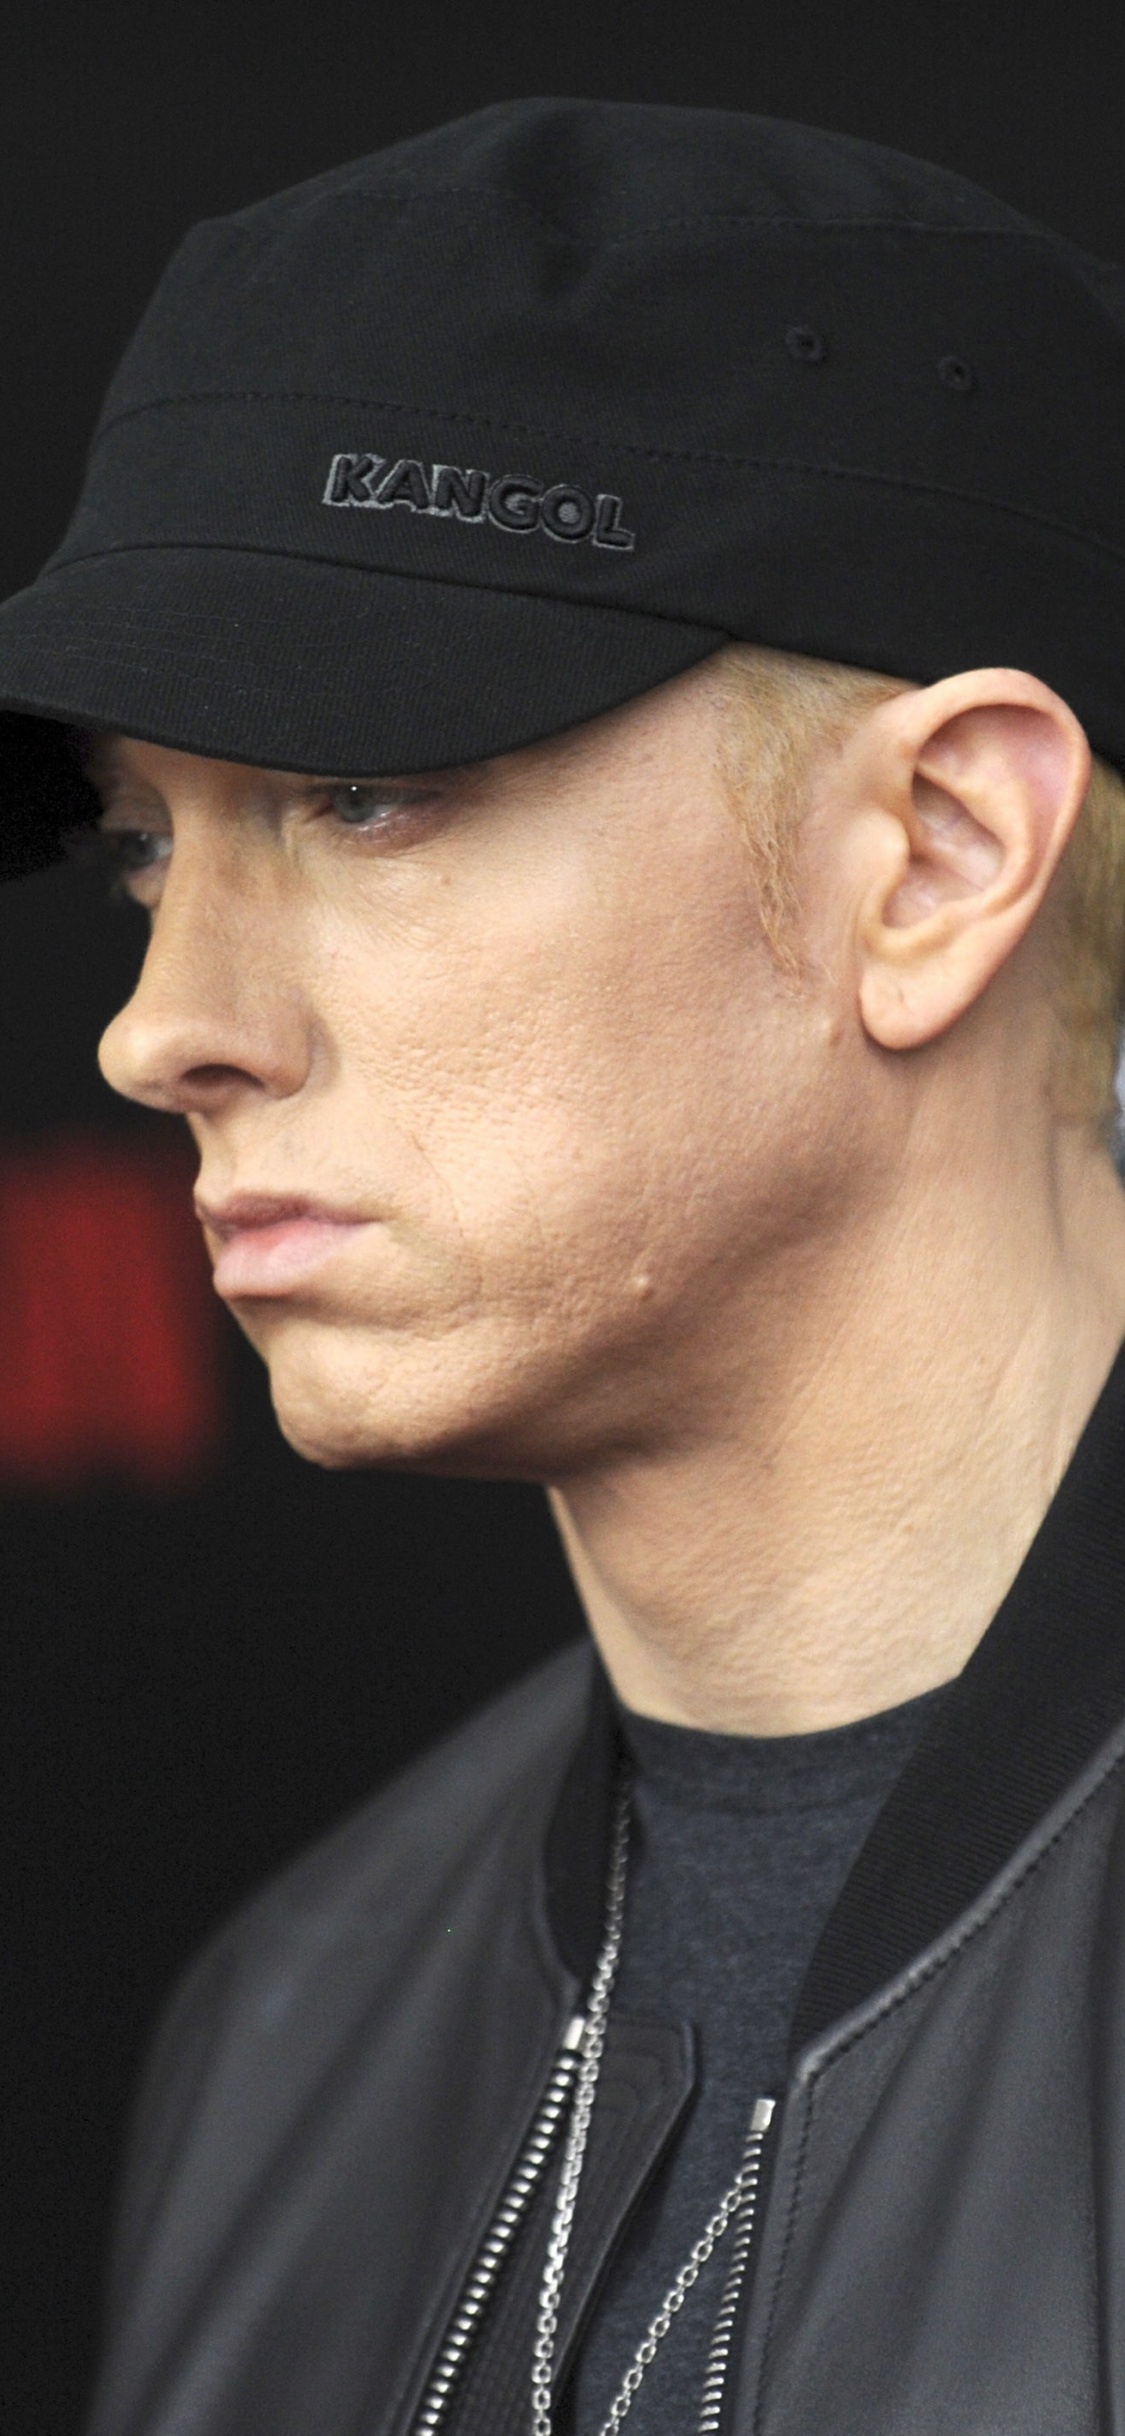 Eminem, Rapper, Hip-hop-Musik, Cool, Kappe. Wallpaper in 1125x2436 Resolution